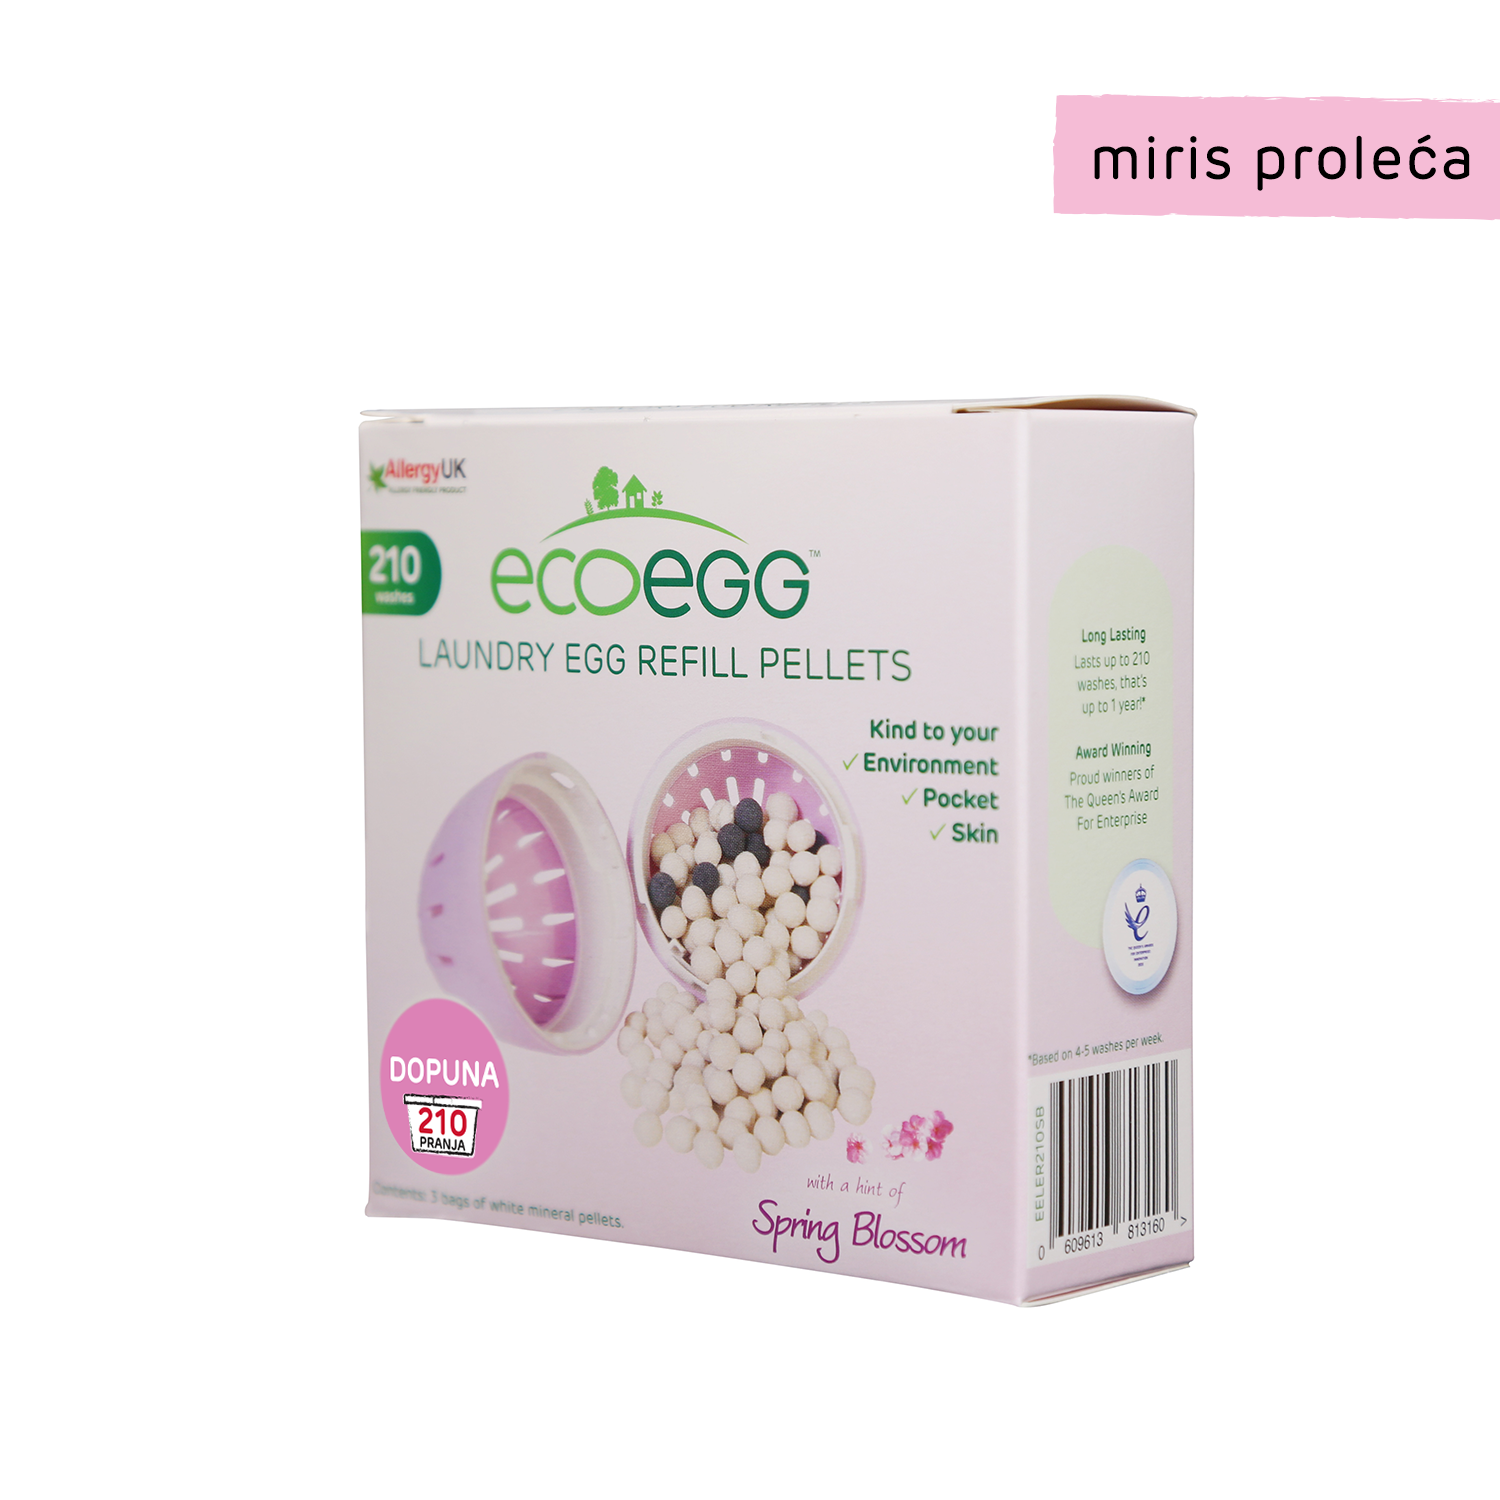 Eco egg dopuna 210 pranja miris proleća